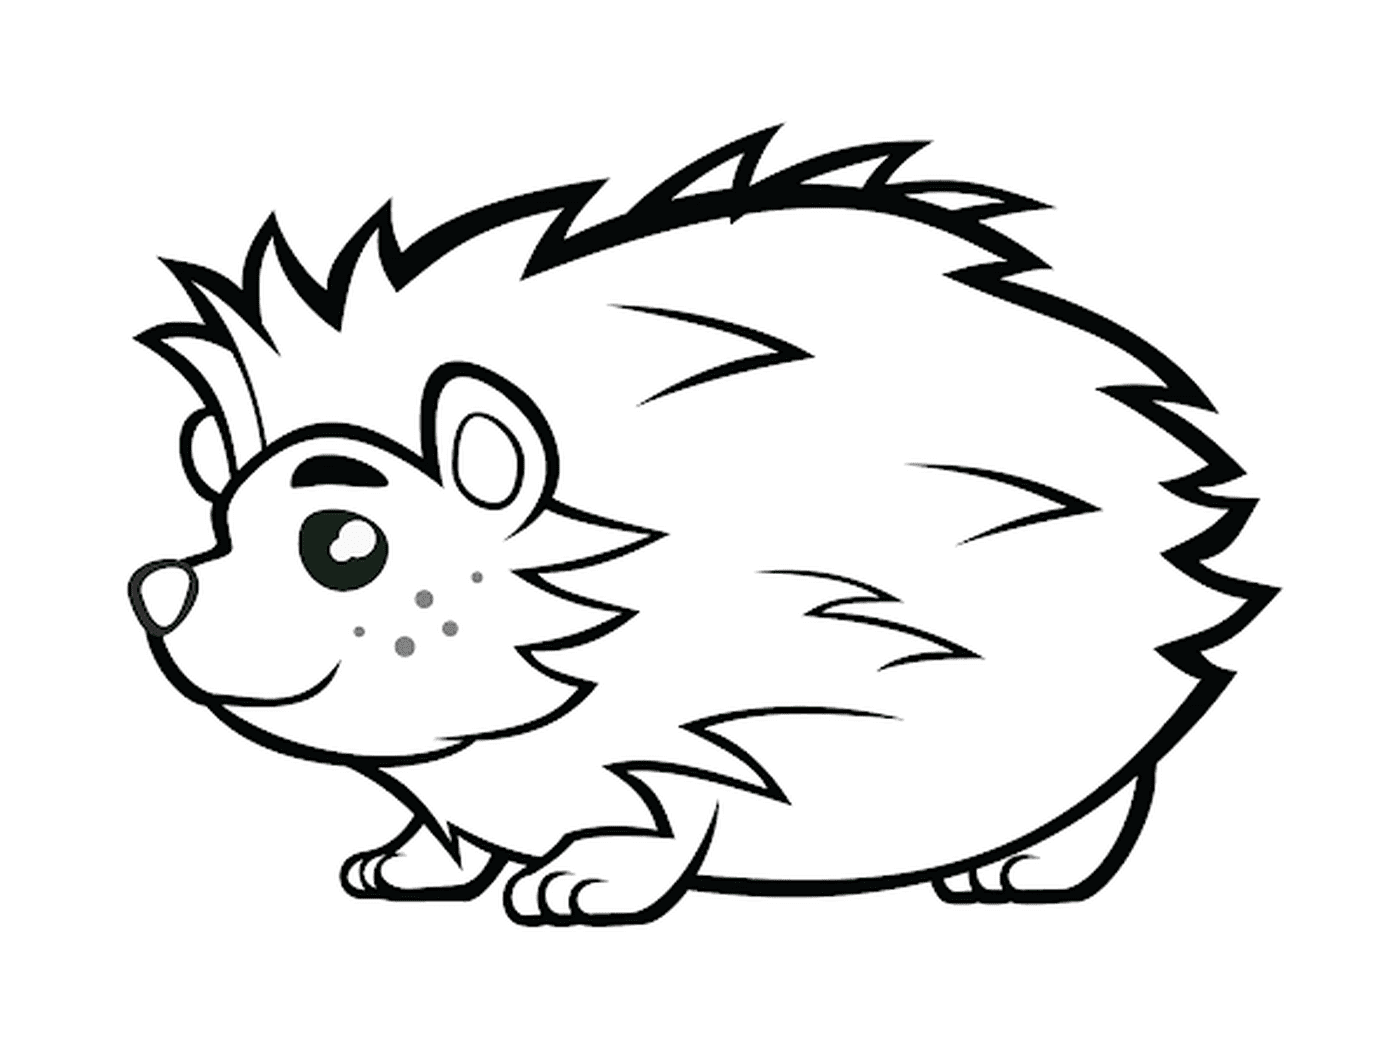  Hedgehog com olhos lindos 